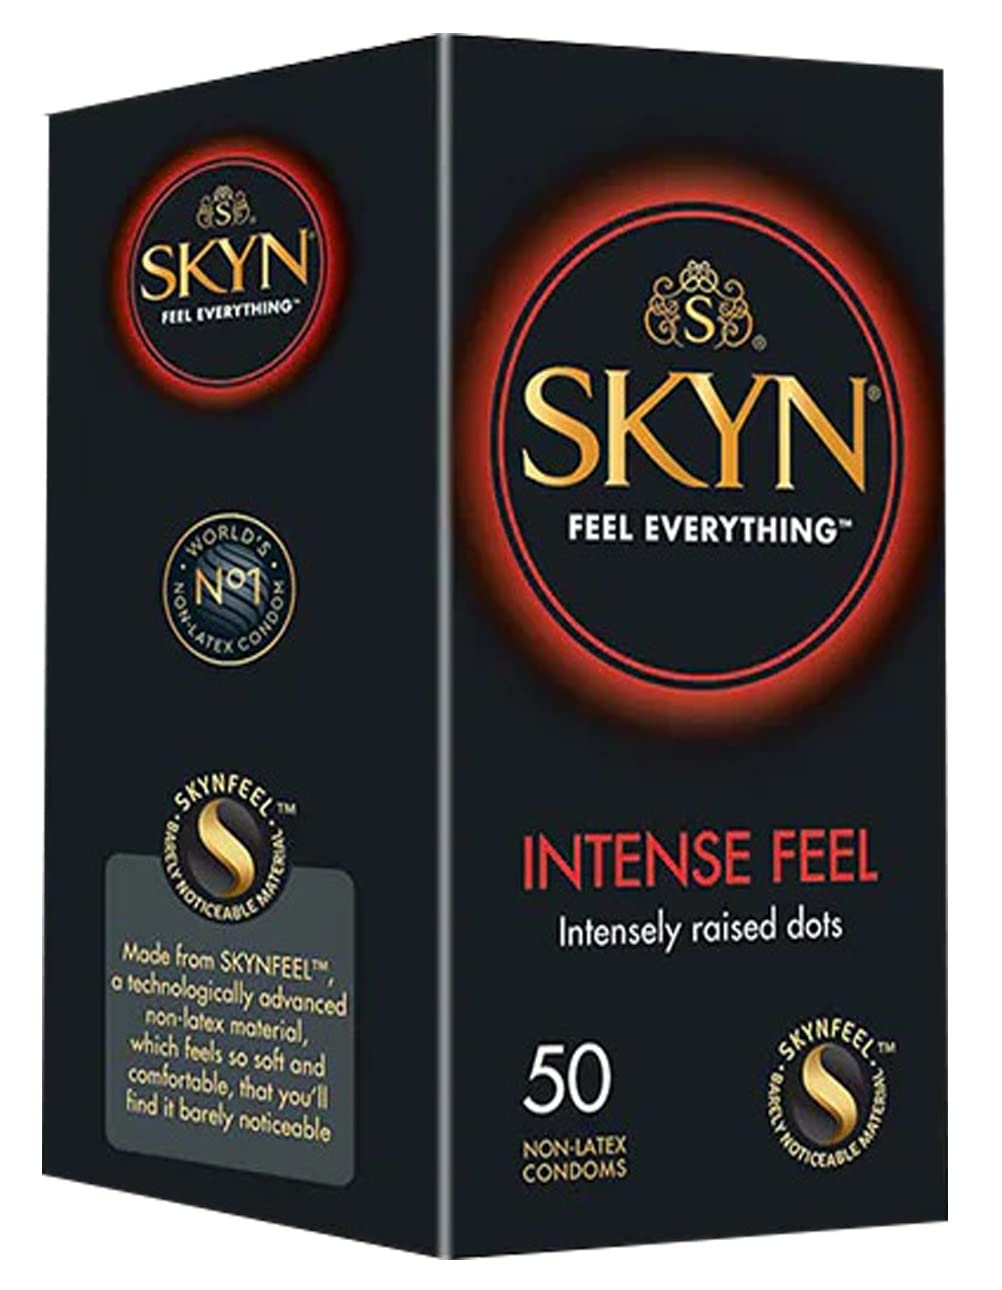 SKYN Intense Feel Kondome (50 Stück) | Skynfeel Latexfreie Kondome für Männer, Gefühlsecht Hauchzart, Extra Starken Noppen Kondome Box, Stimulierend, Kondome 53mm Breite, mit unsere Lubes verwendbar